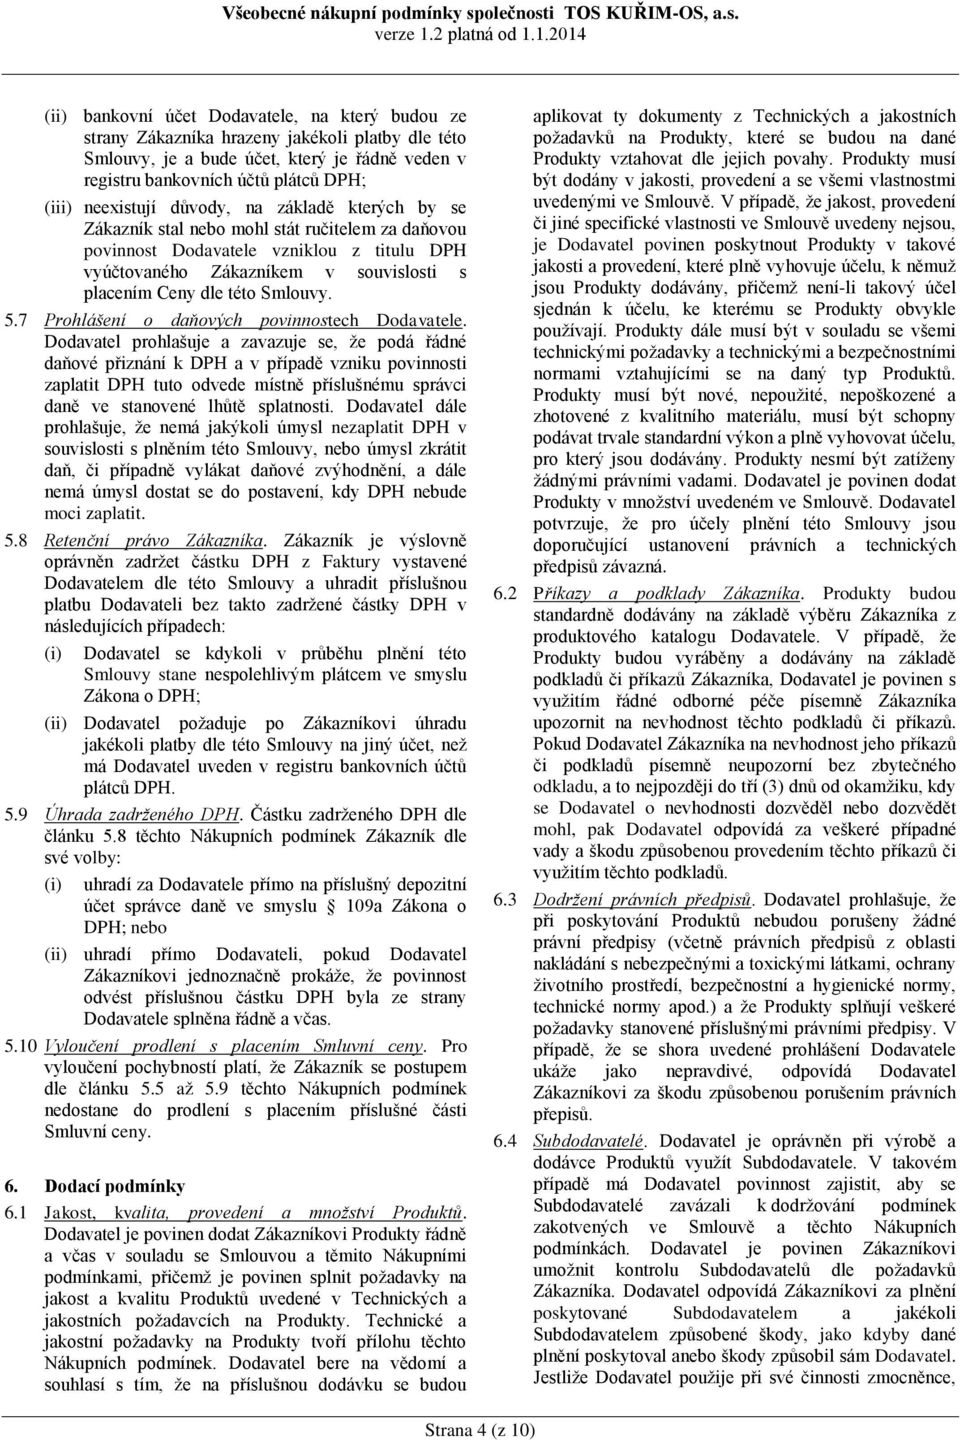 Smlouvy. 5.7 Prohlášení o daňových povinnostech Dodavatele.